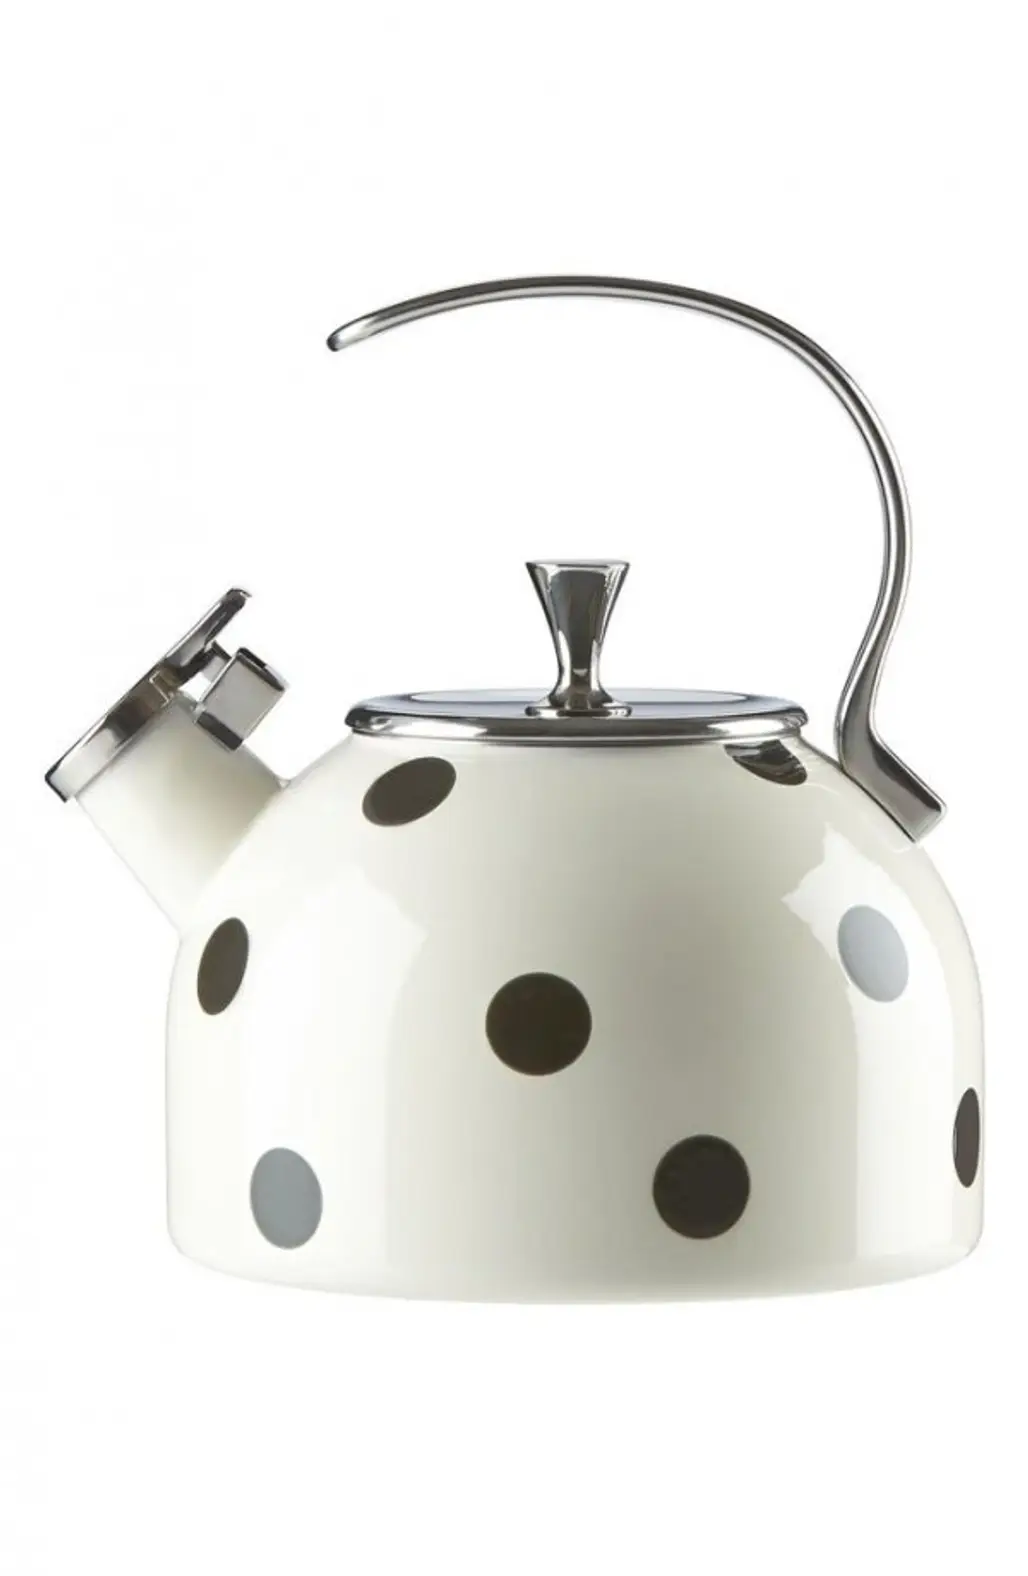 kettle, teapot, small appliance, lighting, ceramic,